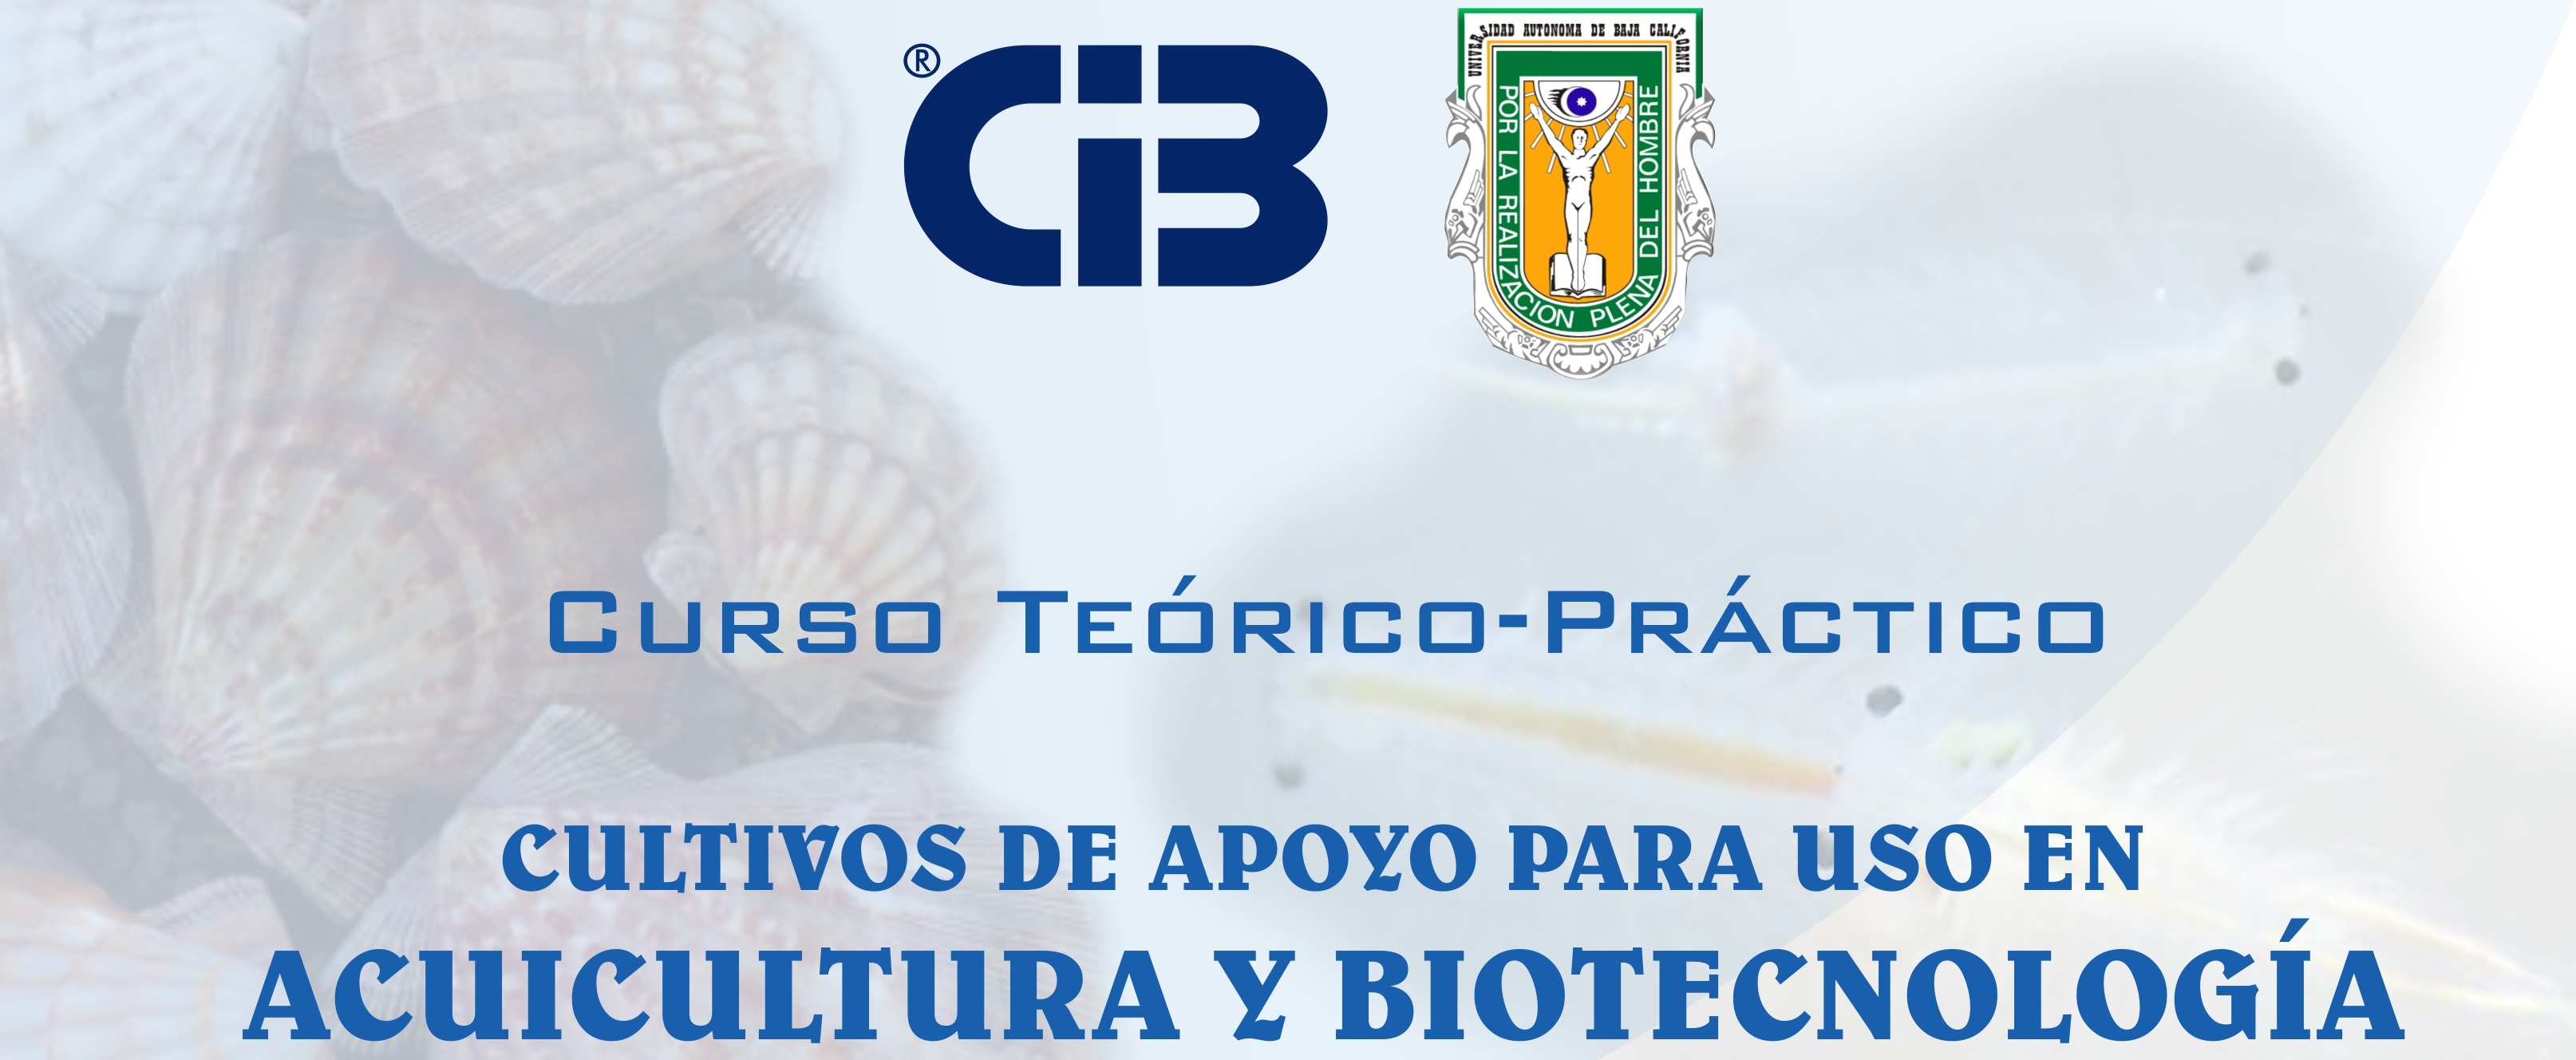 Curso te�rico-pr�ctico: cultivos de apoyo para uso en acuicultura y biotecnolog�a